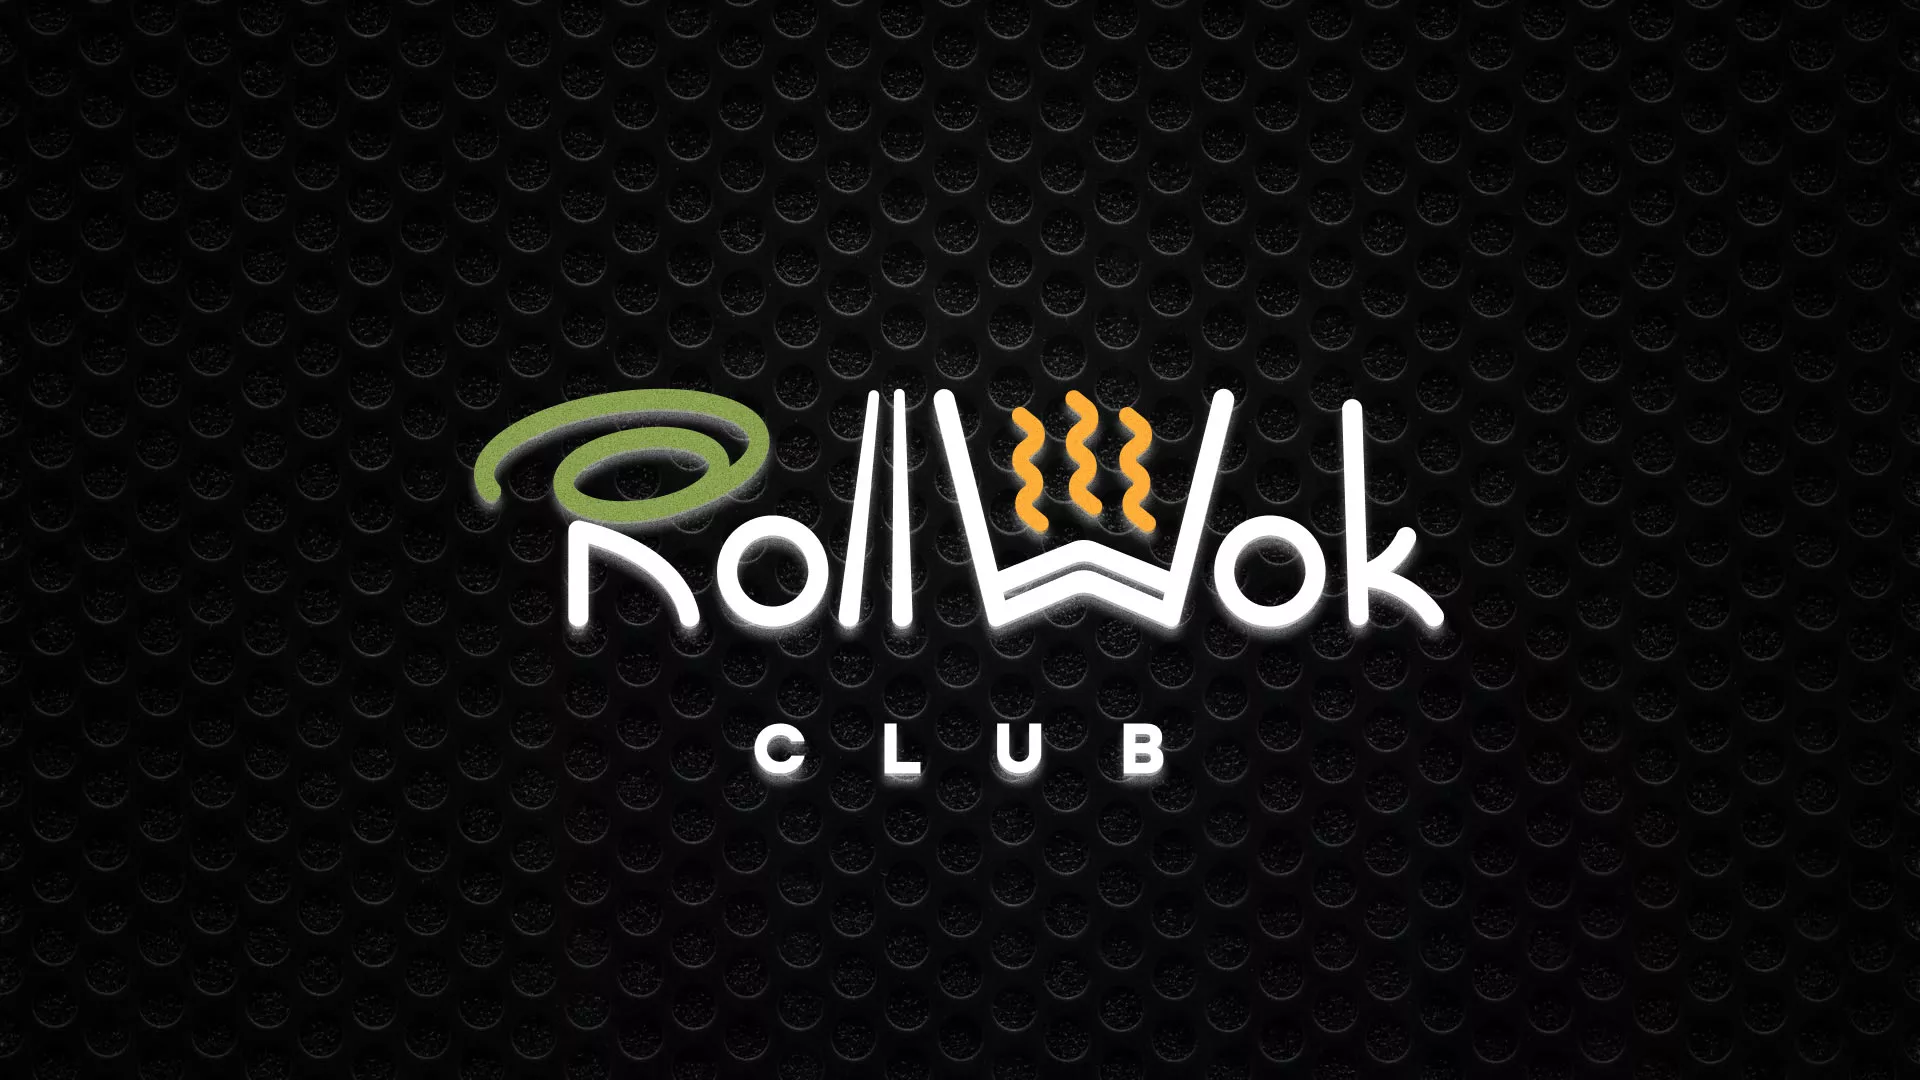 Брендирование торговых точек суши-бара «Roll Wok Club» в Кораблино